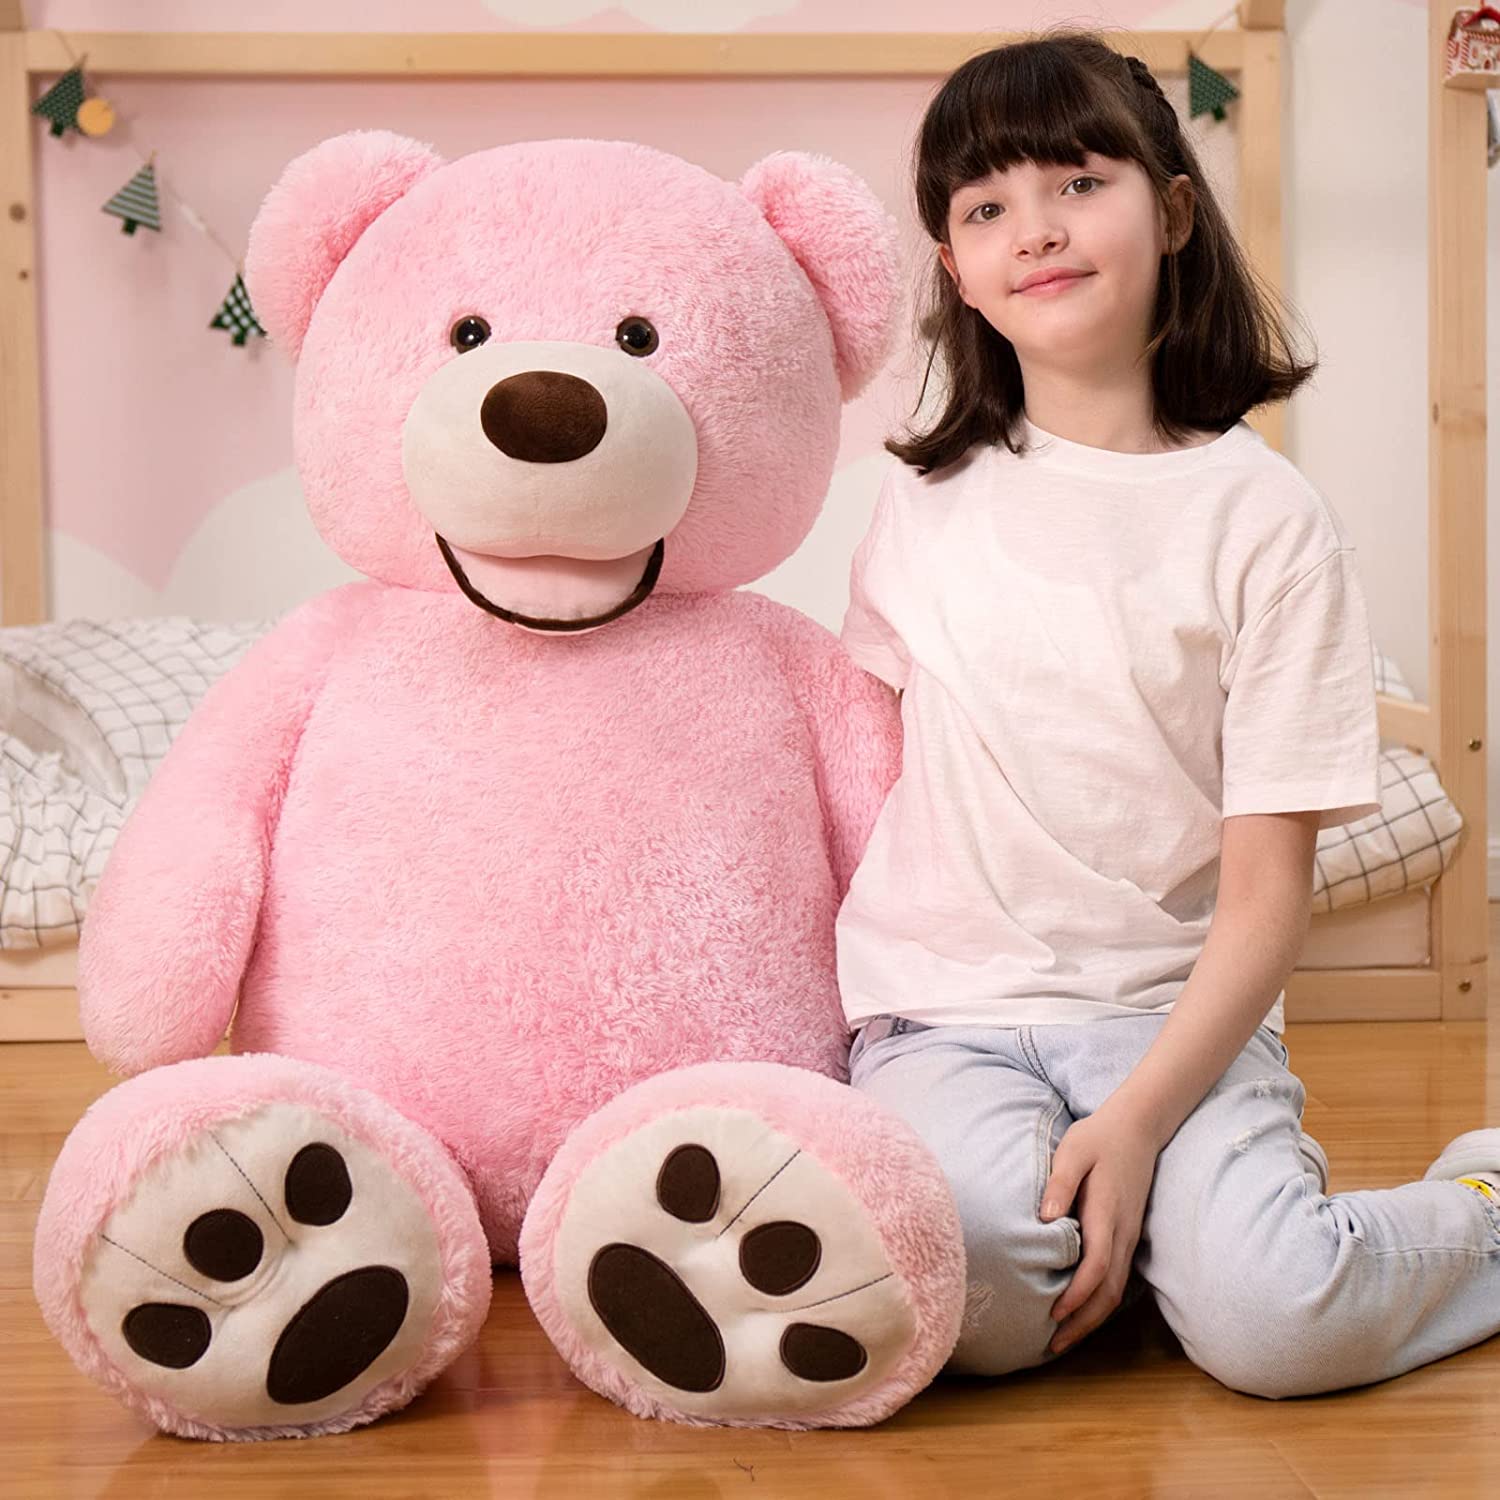 MorisMos Super Soft Teddy Bear Stuffed Animal, 51-Inch